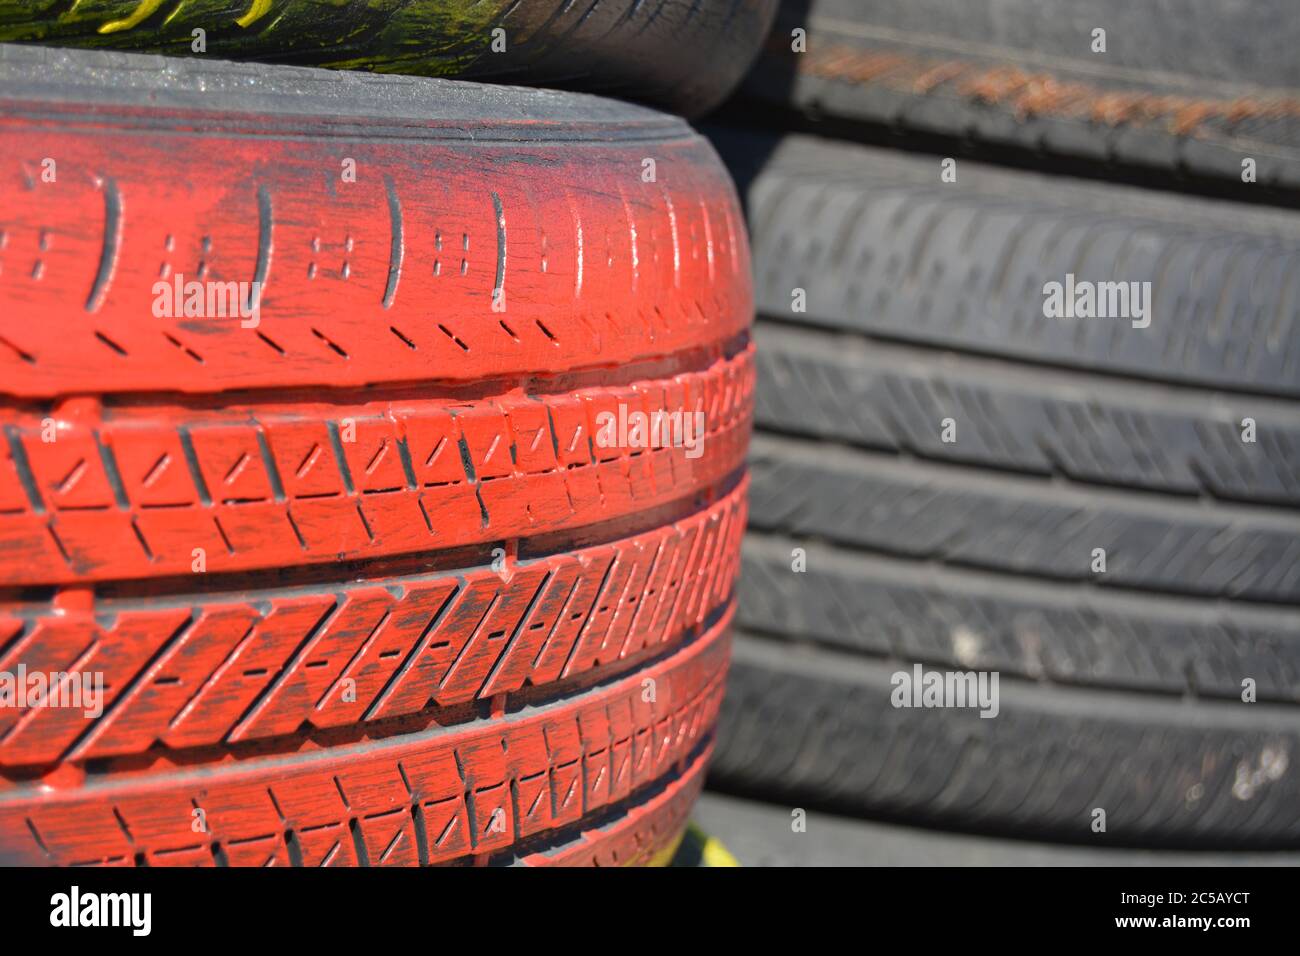 Reifen. Rote Autoreifen vertikal gestapelt / aufgestapelt. Guter  Hintergrund für Visitenkarte für das Reifengeschäft. Bild für die  Visitenkarte des Reifens Stockfotografie - Alamy